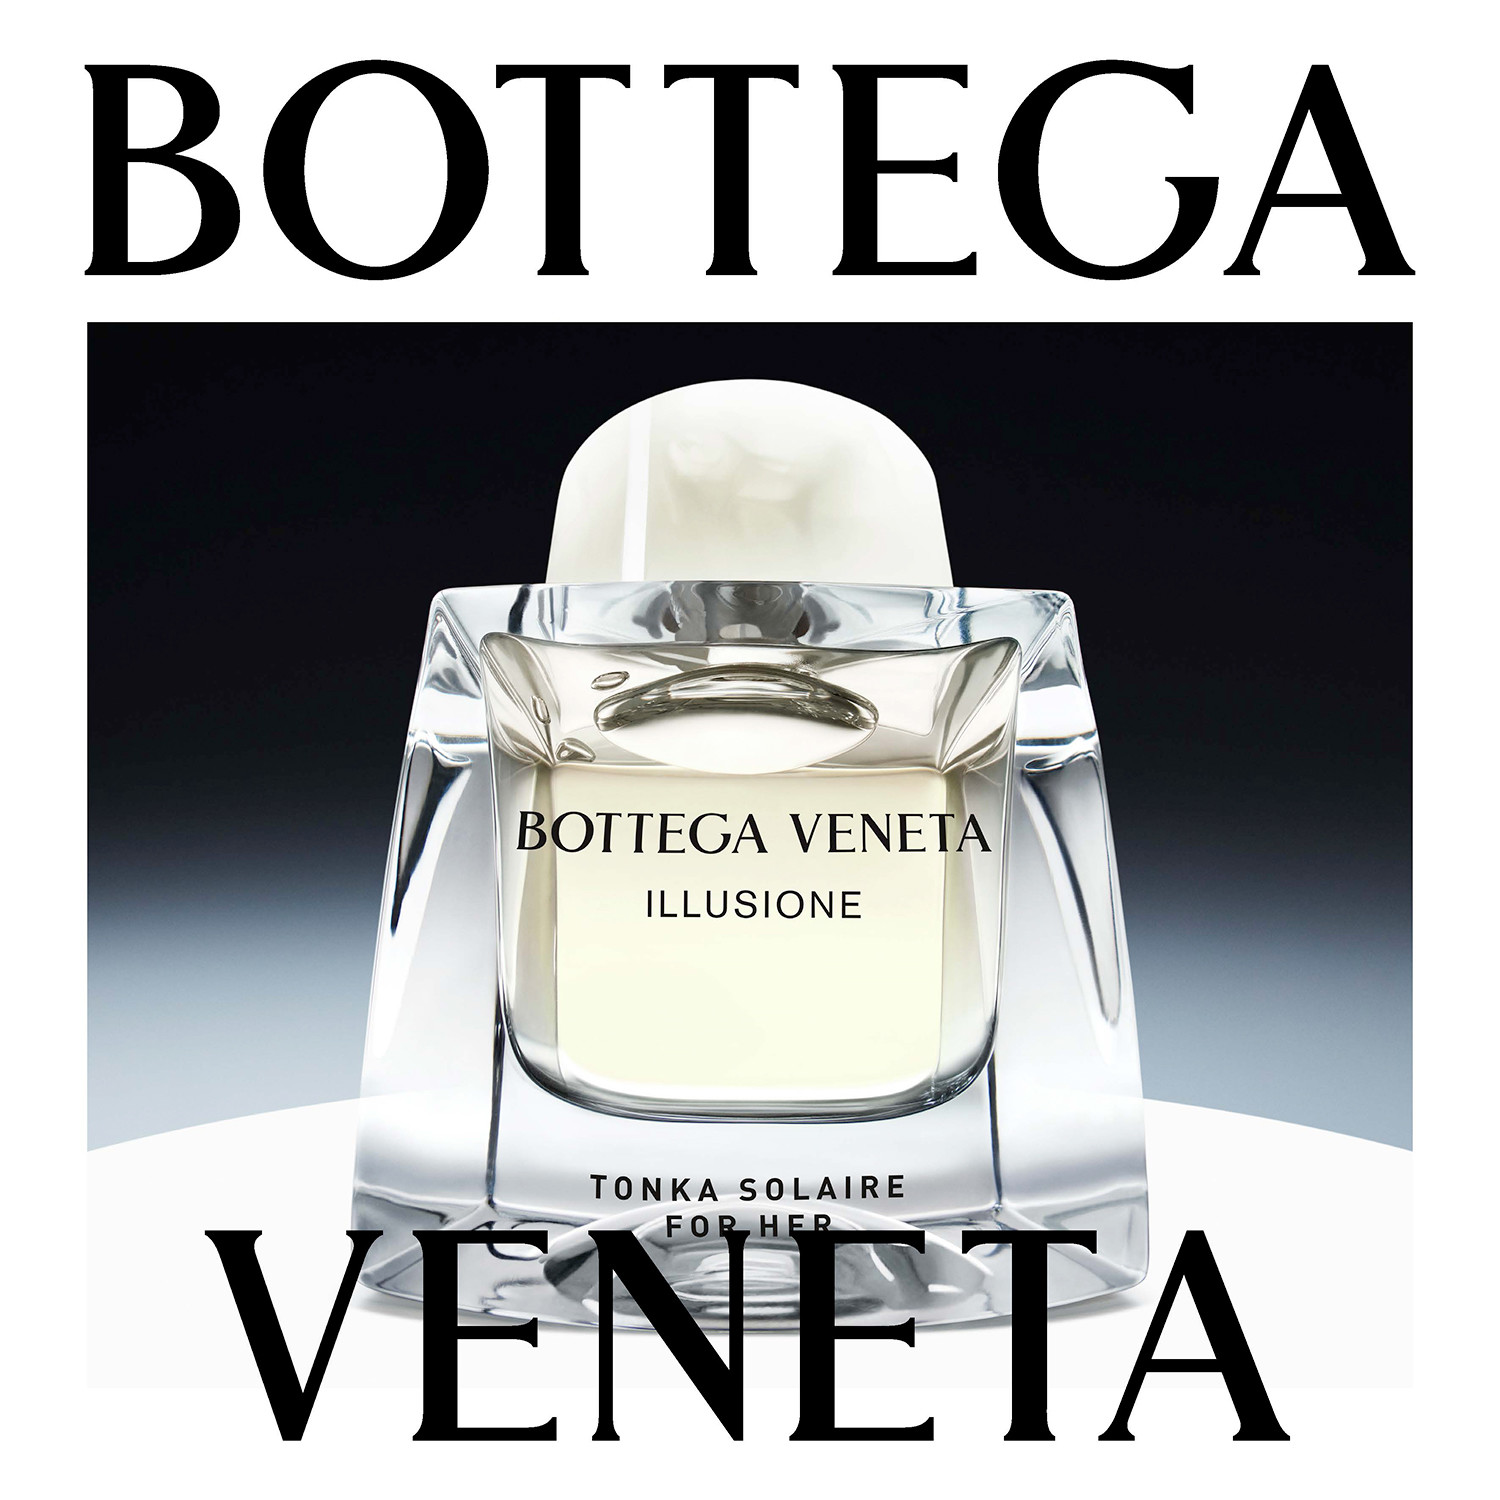 Bottega Veneta "illusione"limited edition campaign, shot by Jean-Marie Binet - © artifices